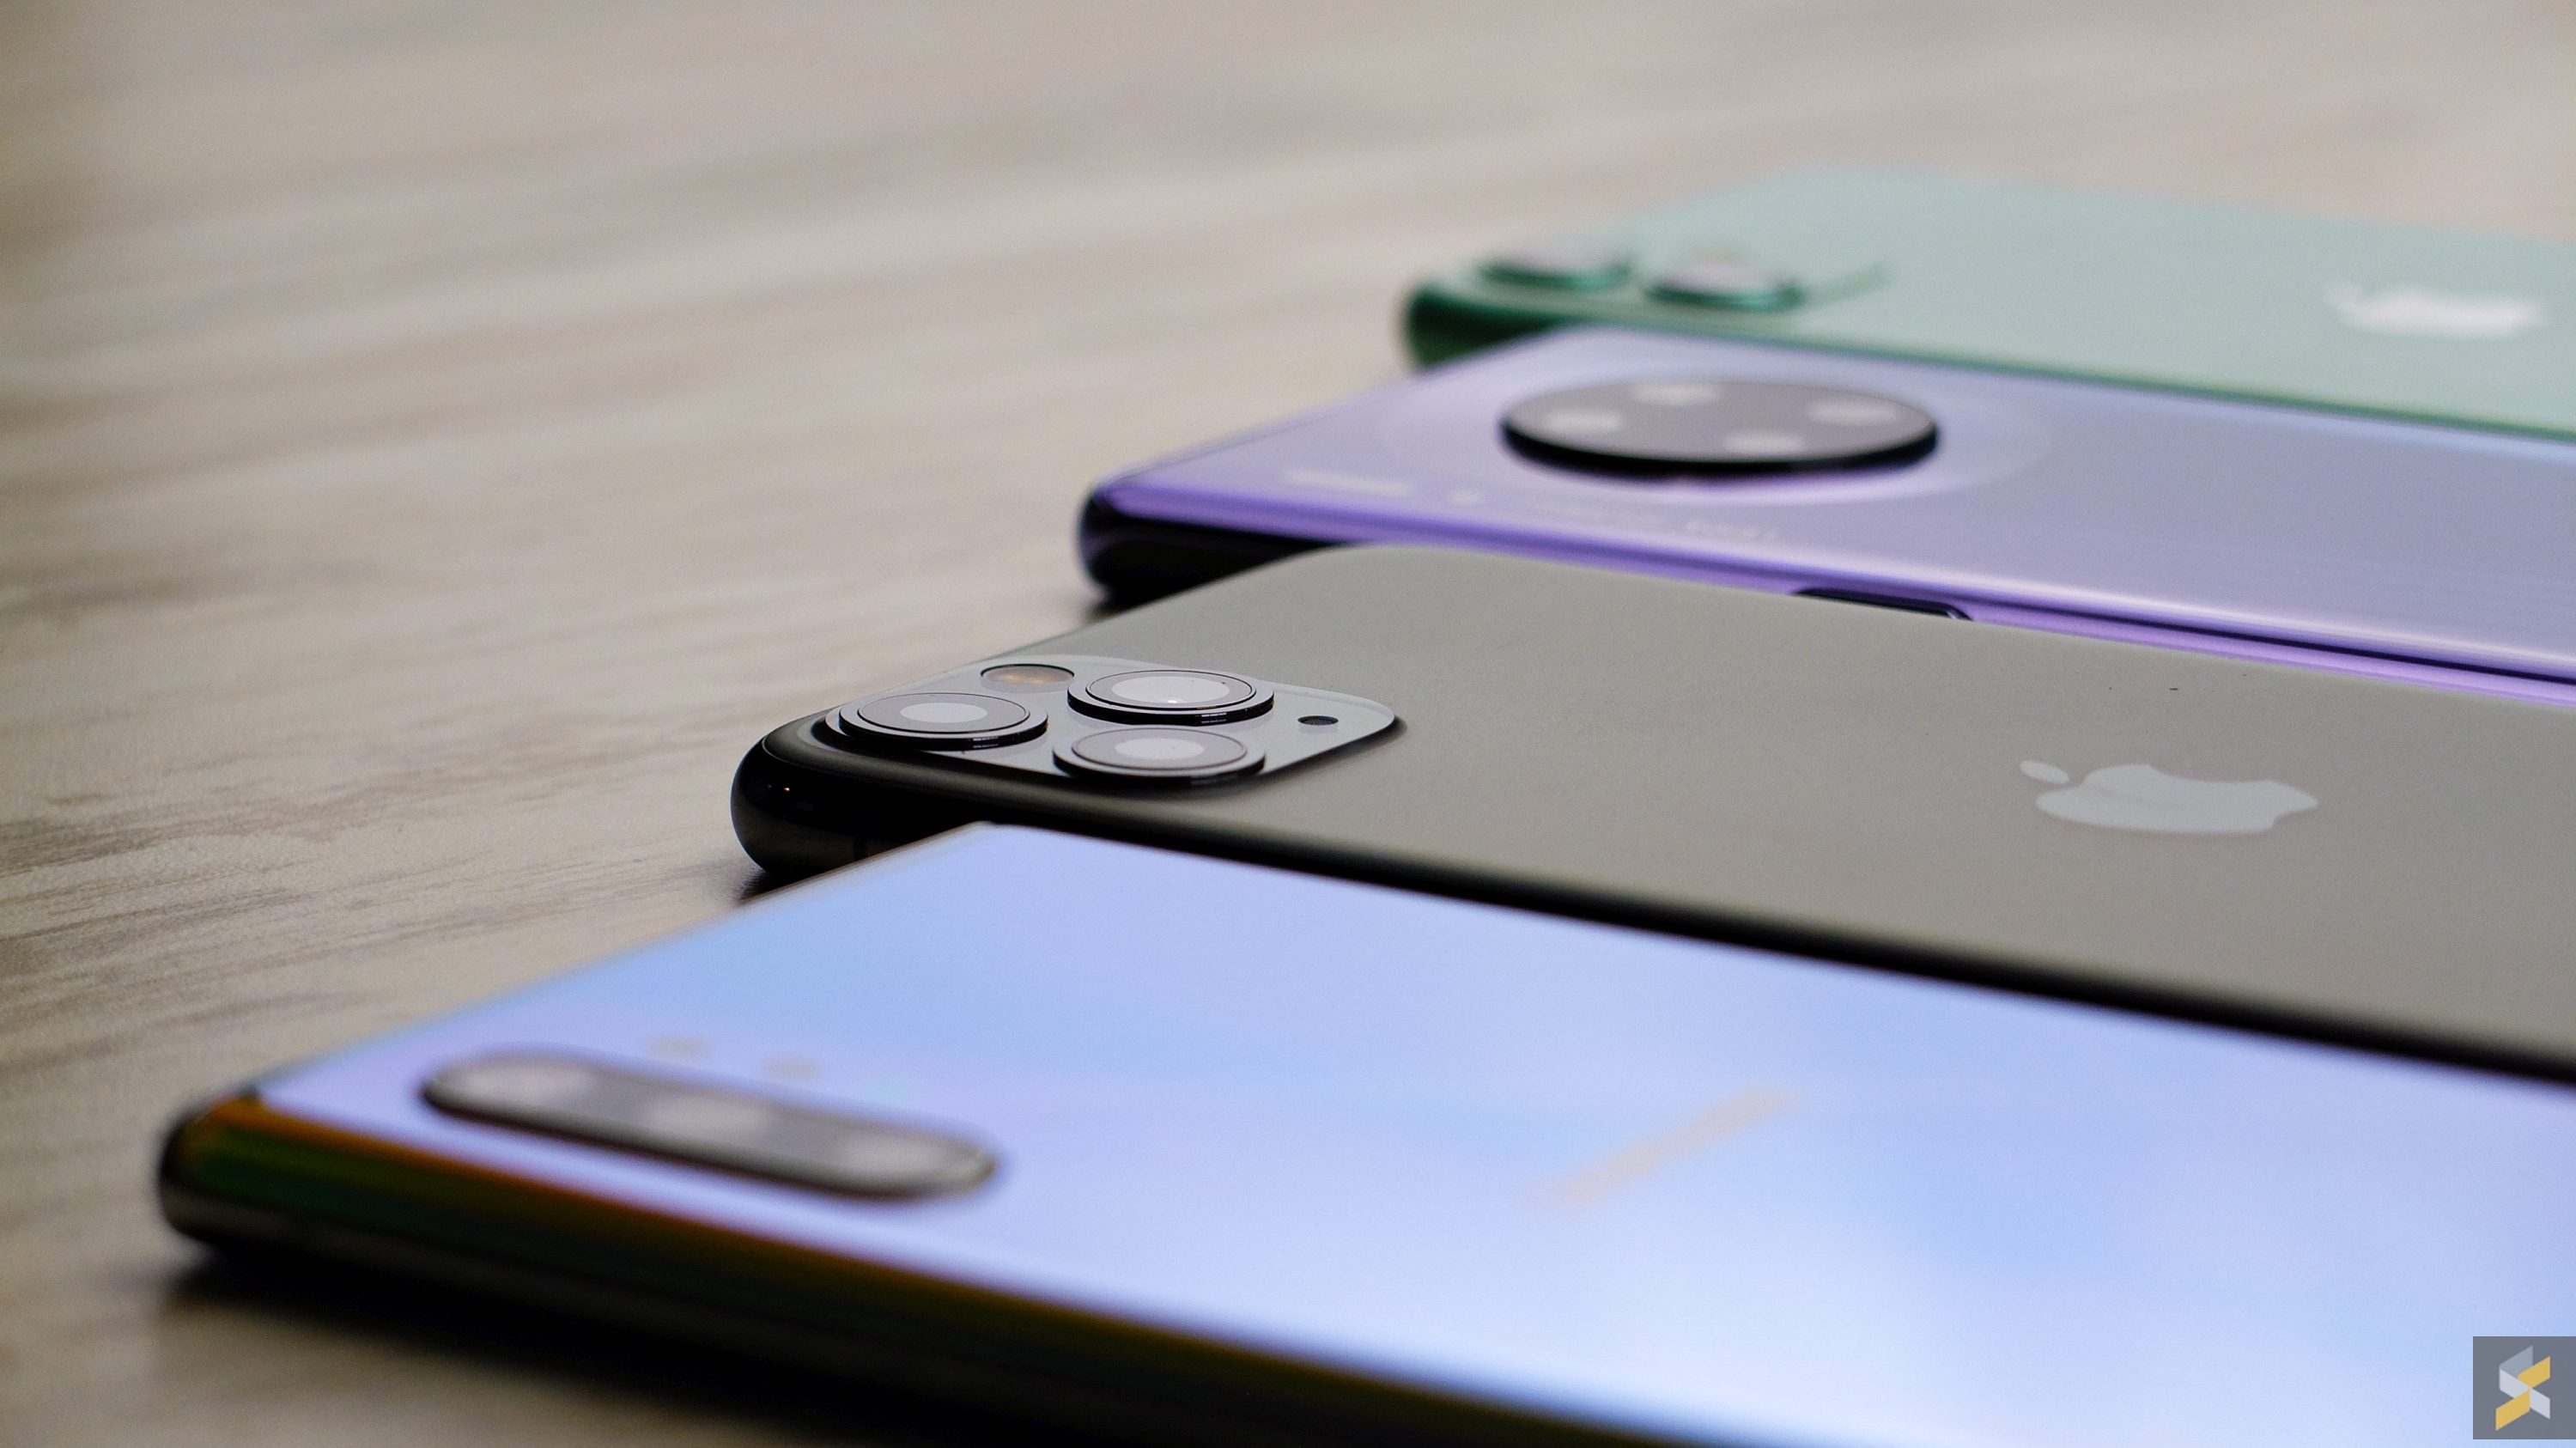 Camera Comparison: iPhone 11 Pro Max vs. Samsung Galaxy Note 10+